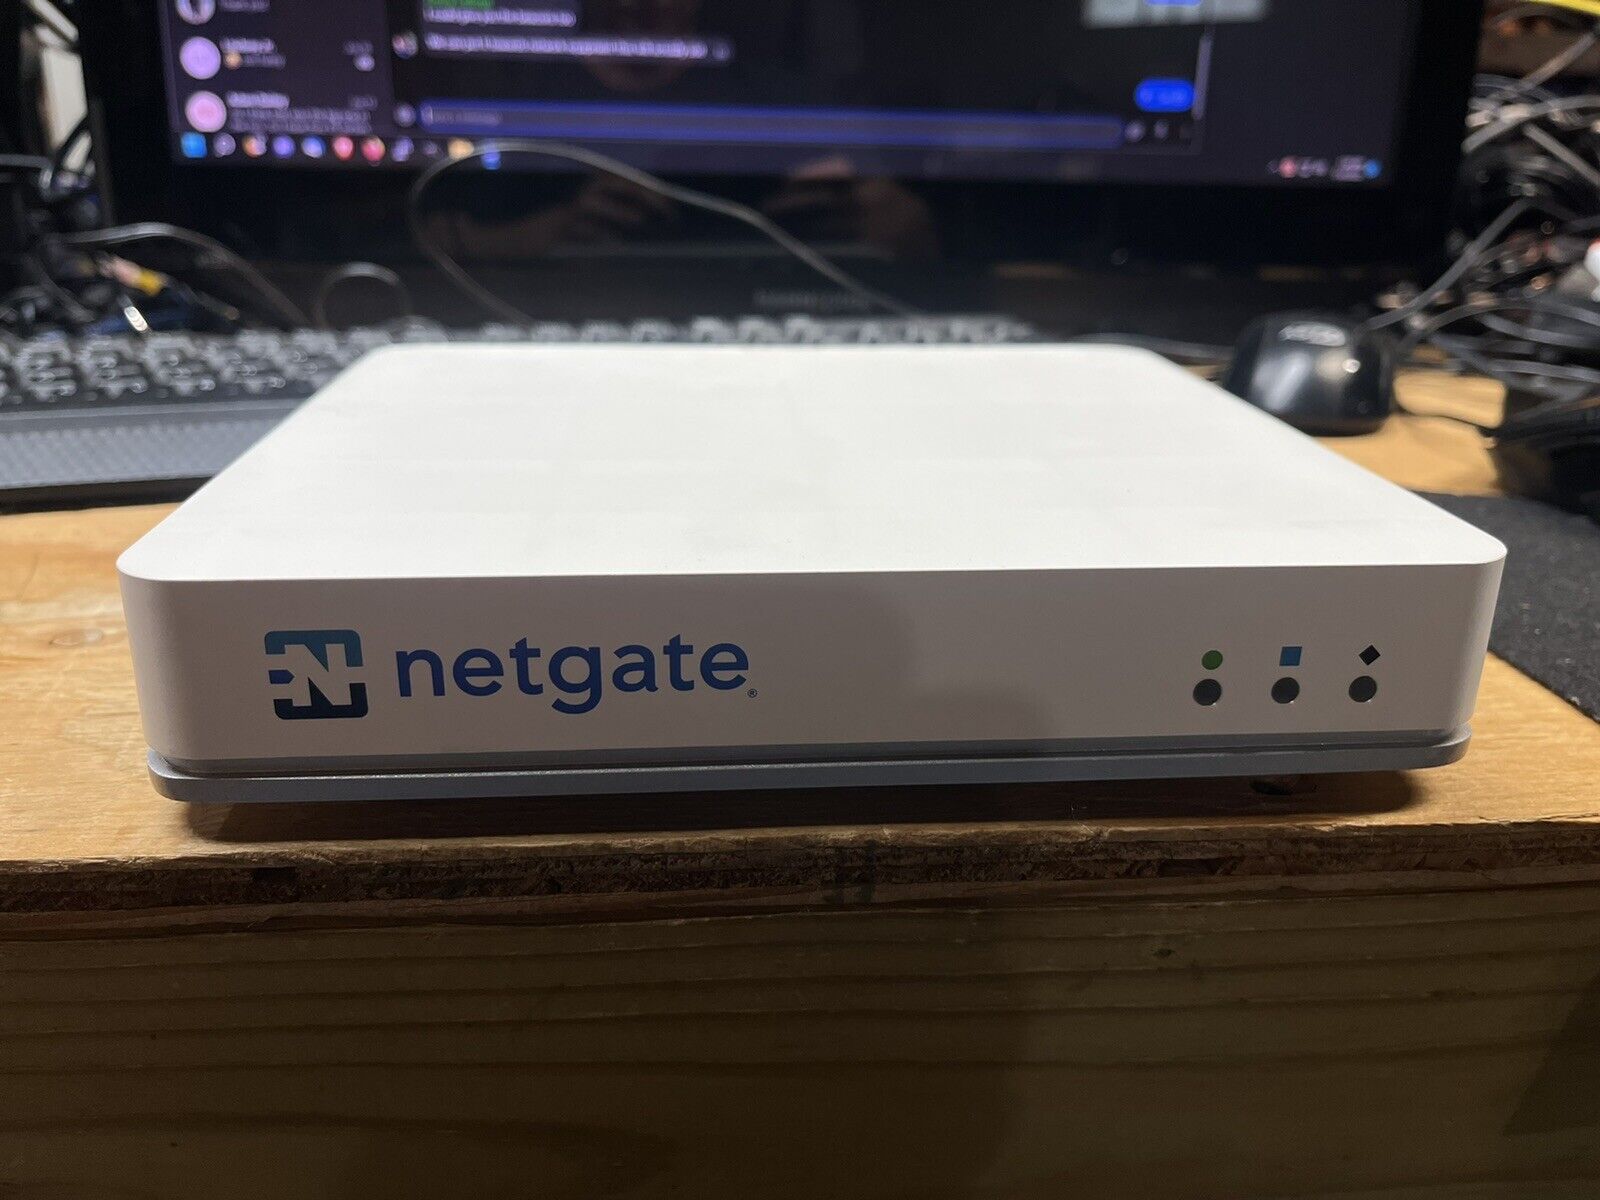 pfSense Netgate 3100 Security Gateway VPN Firewall Router - White